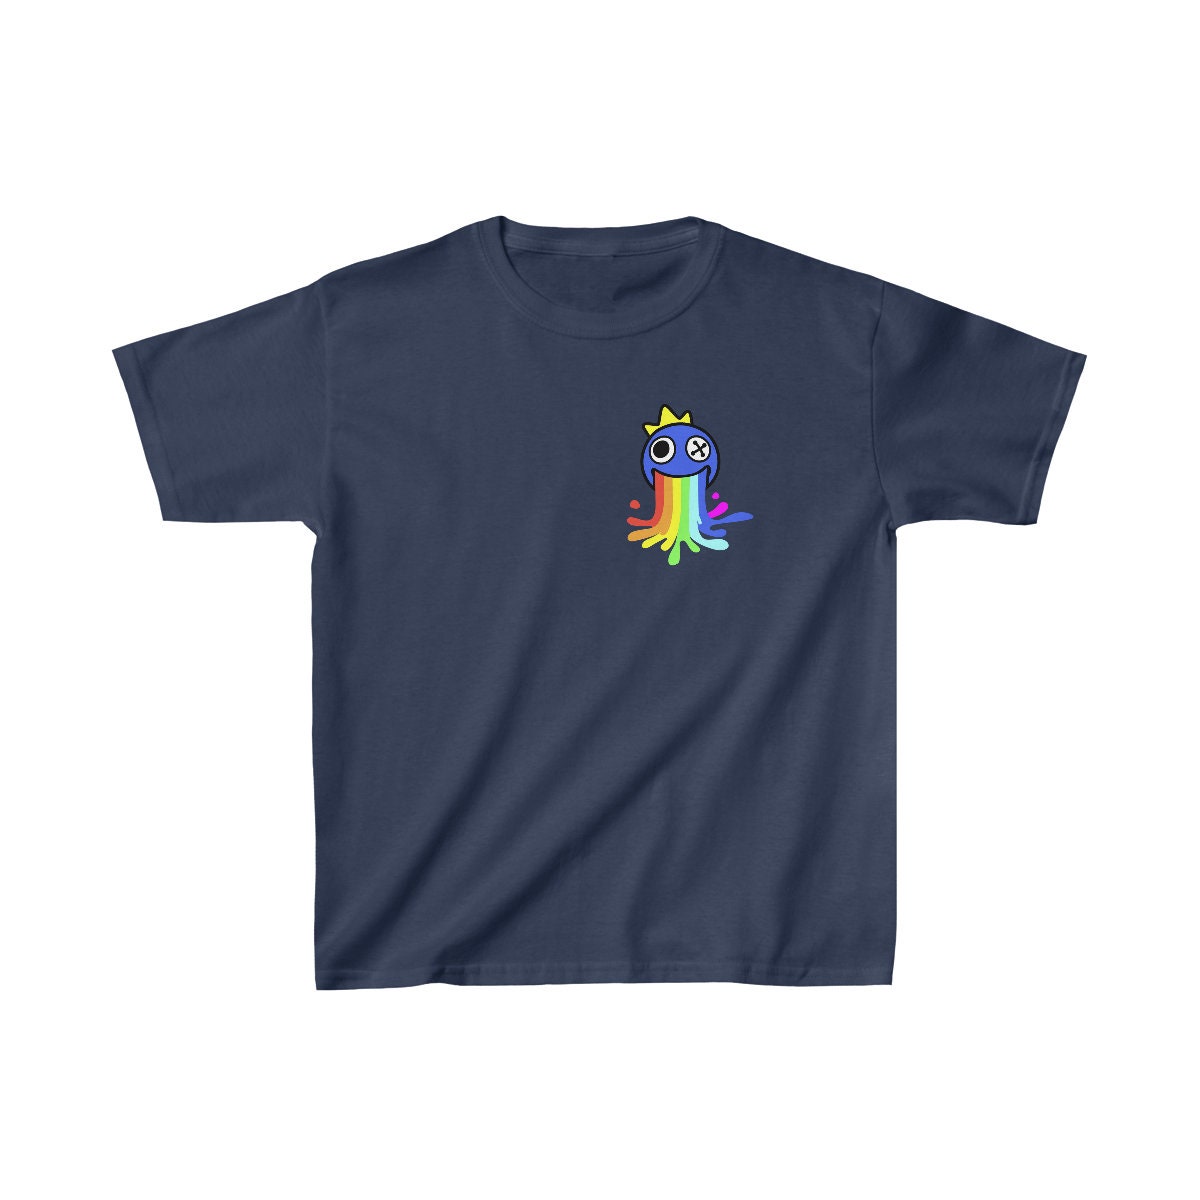 roblox tshirt 🖤  Roblox t shirts, Roblox shirt, Cute tshirt designs